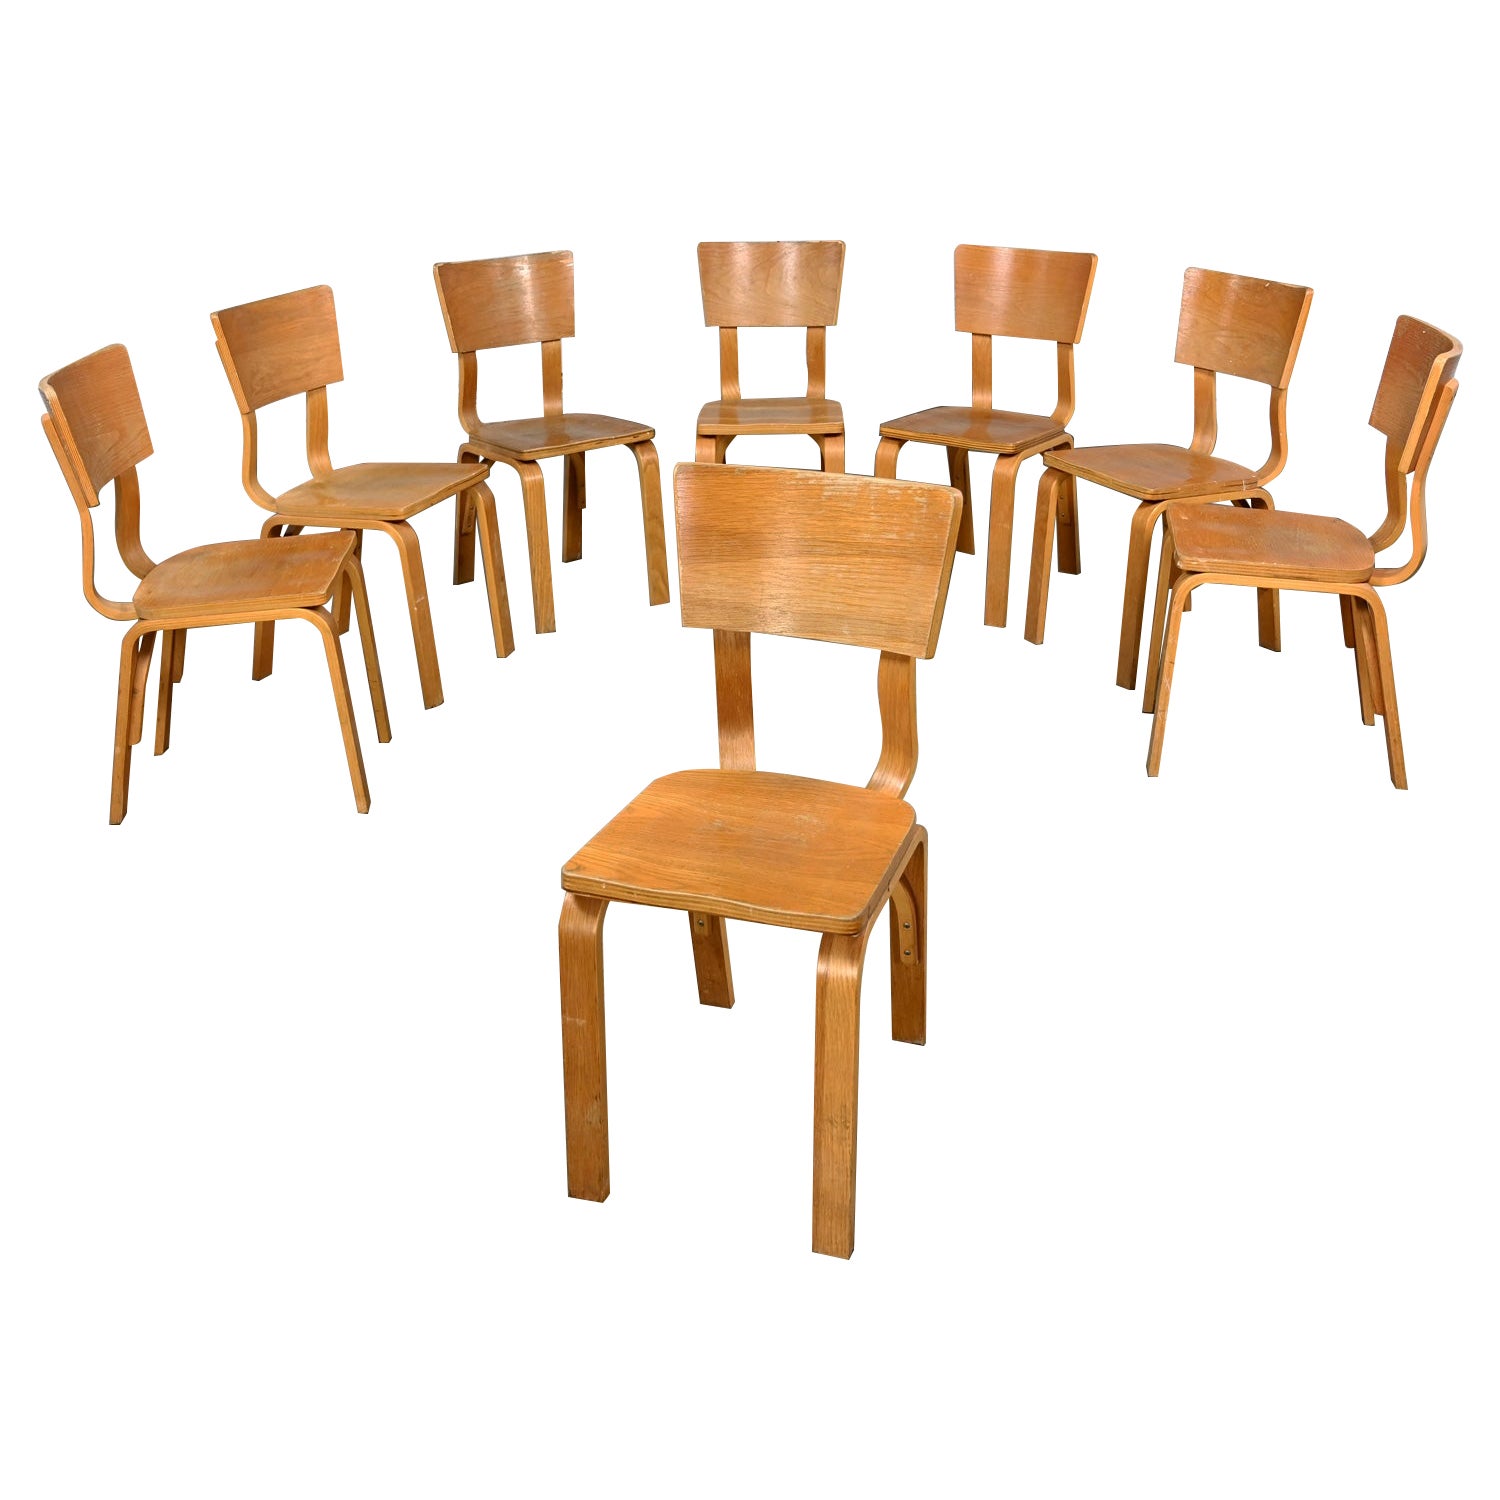 Ensemble de 8 chaises de salle à manger MCM Thonet n°1216 en chêne courbé et contreplaqué avec un nœud unique